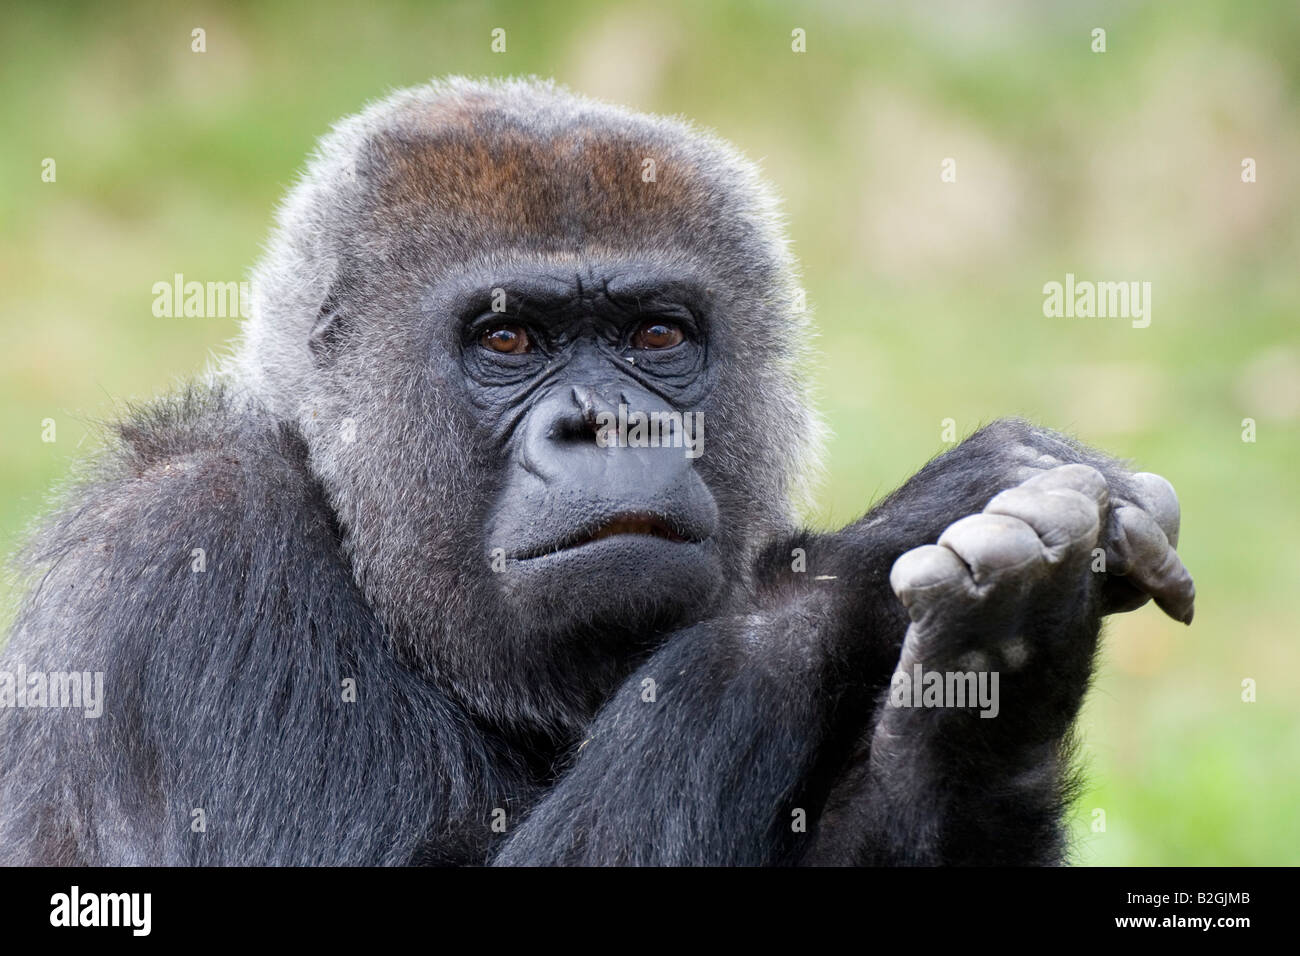 Ritratto di pianura occidentale Gorilla gorilla gorilla scimmie del Vecchio mondo Foto Stock